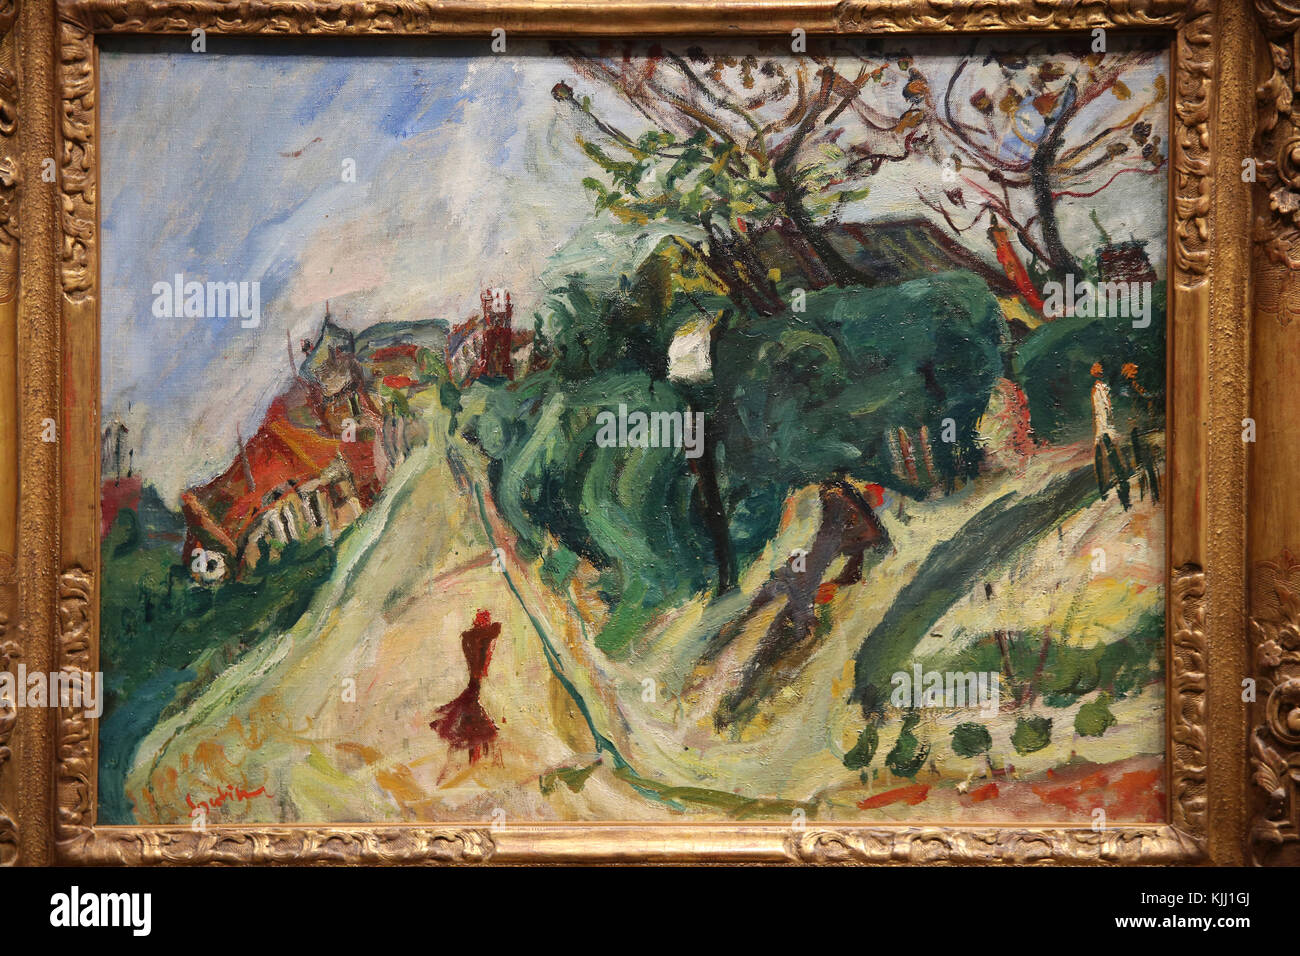 MusŽe de l'Orangerie, Paris. Cha•m Soutine, Paysage avec personnage, vers 1918-1919. Huile sur toile. France. Stock Photo